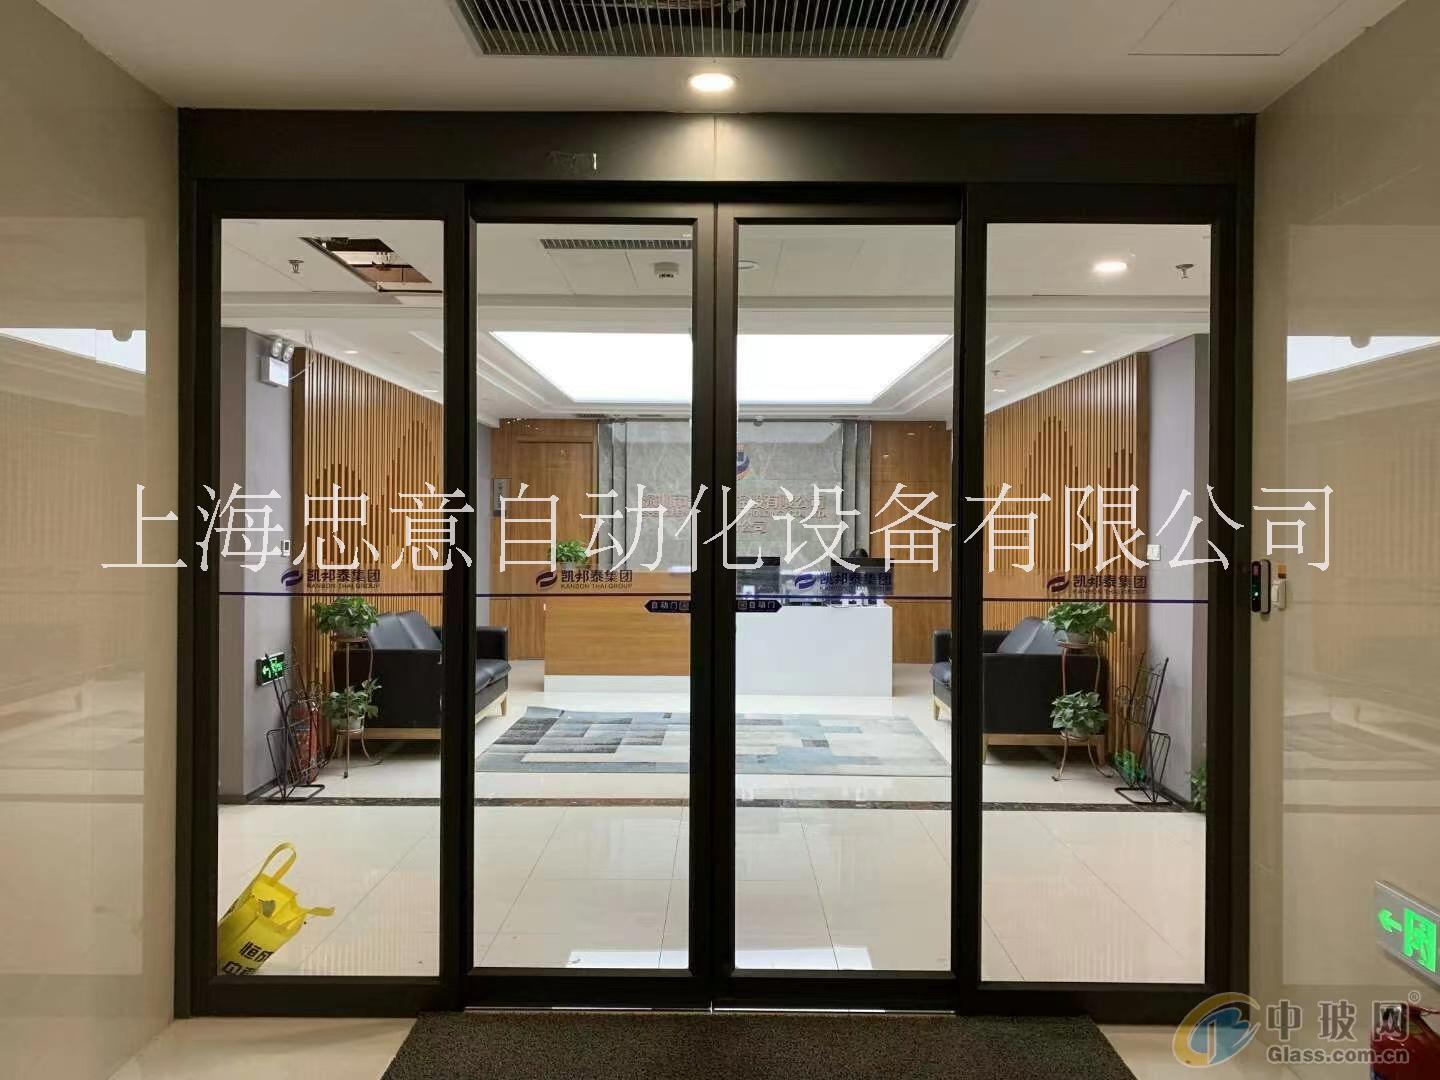 上海自动感应门安装、苏州三翼旋转门、杭州紧急逃生门 自动平移门、旋转门、紧急逃生门